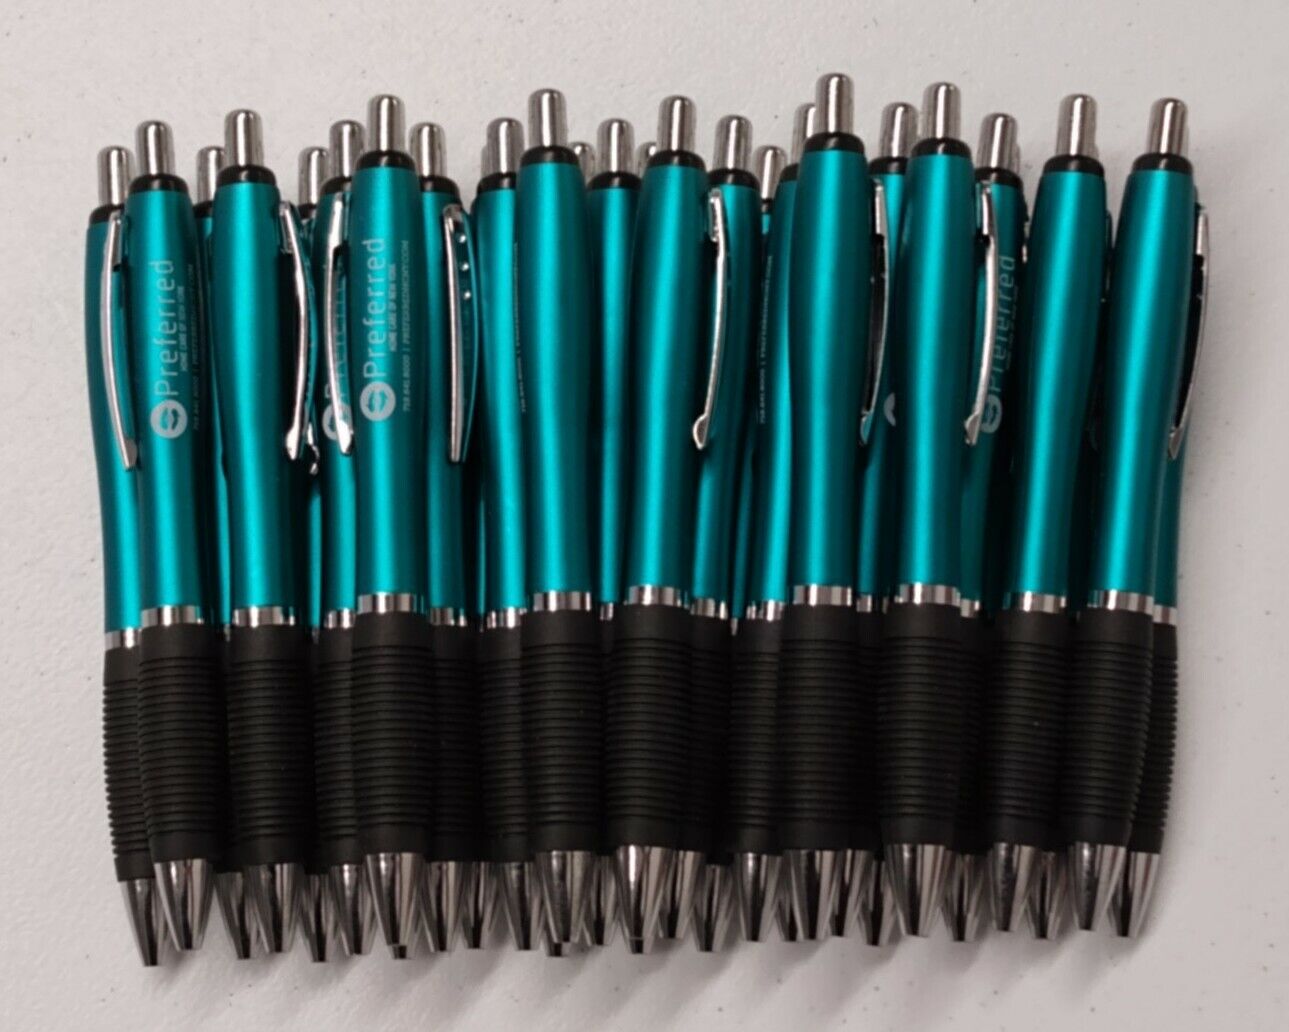 30ct Lot Retractable Misprint Pens Thick Barrel Rubber Grip TEAL/AQUA BLUE/GREEN Misprint Does Not Apply